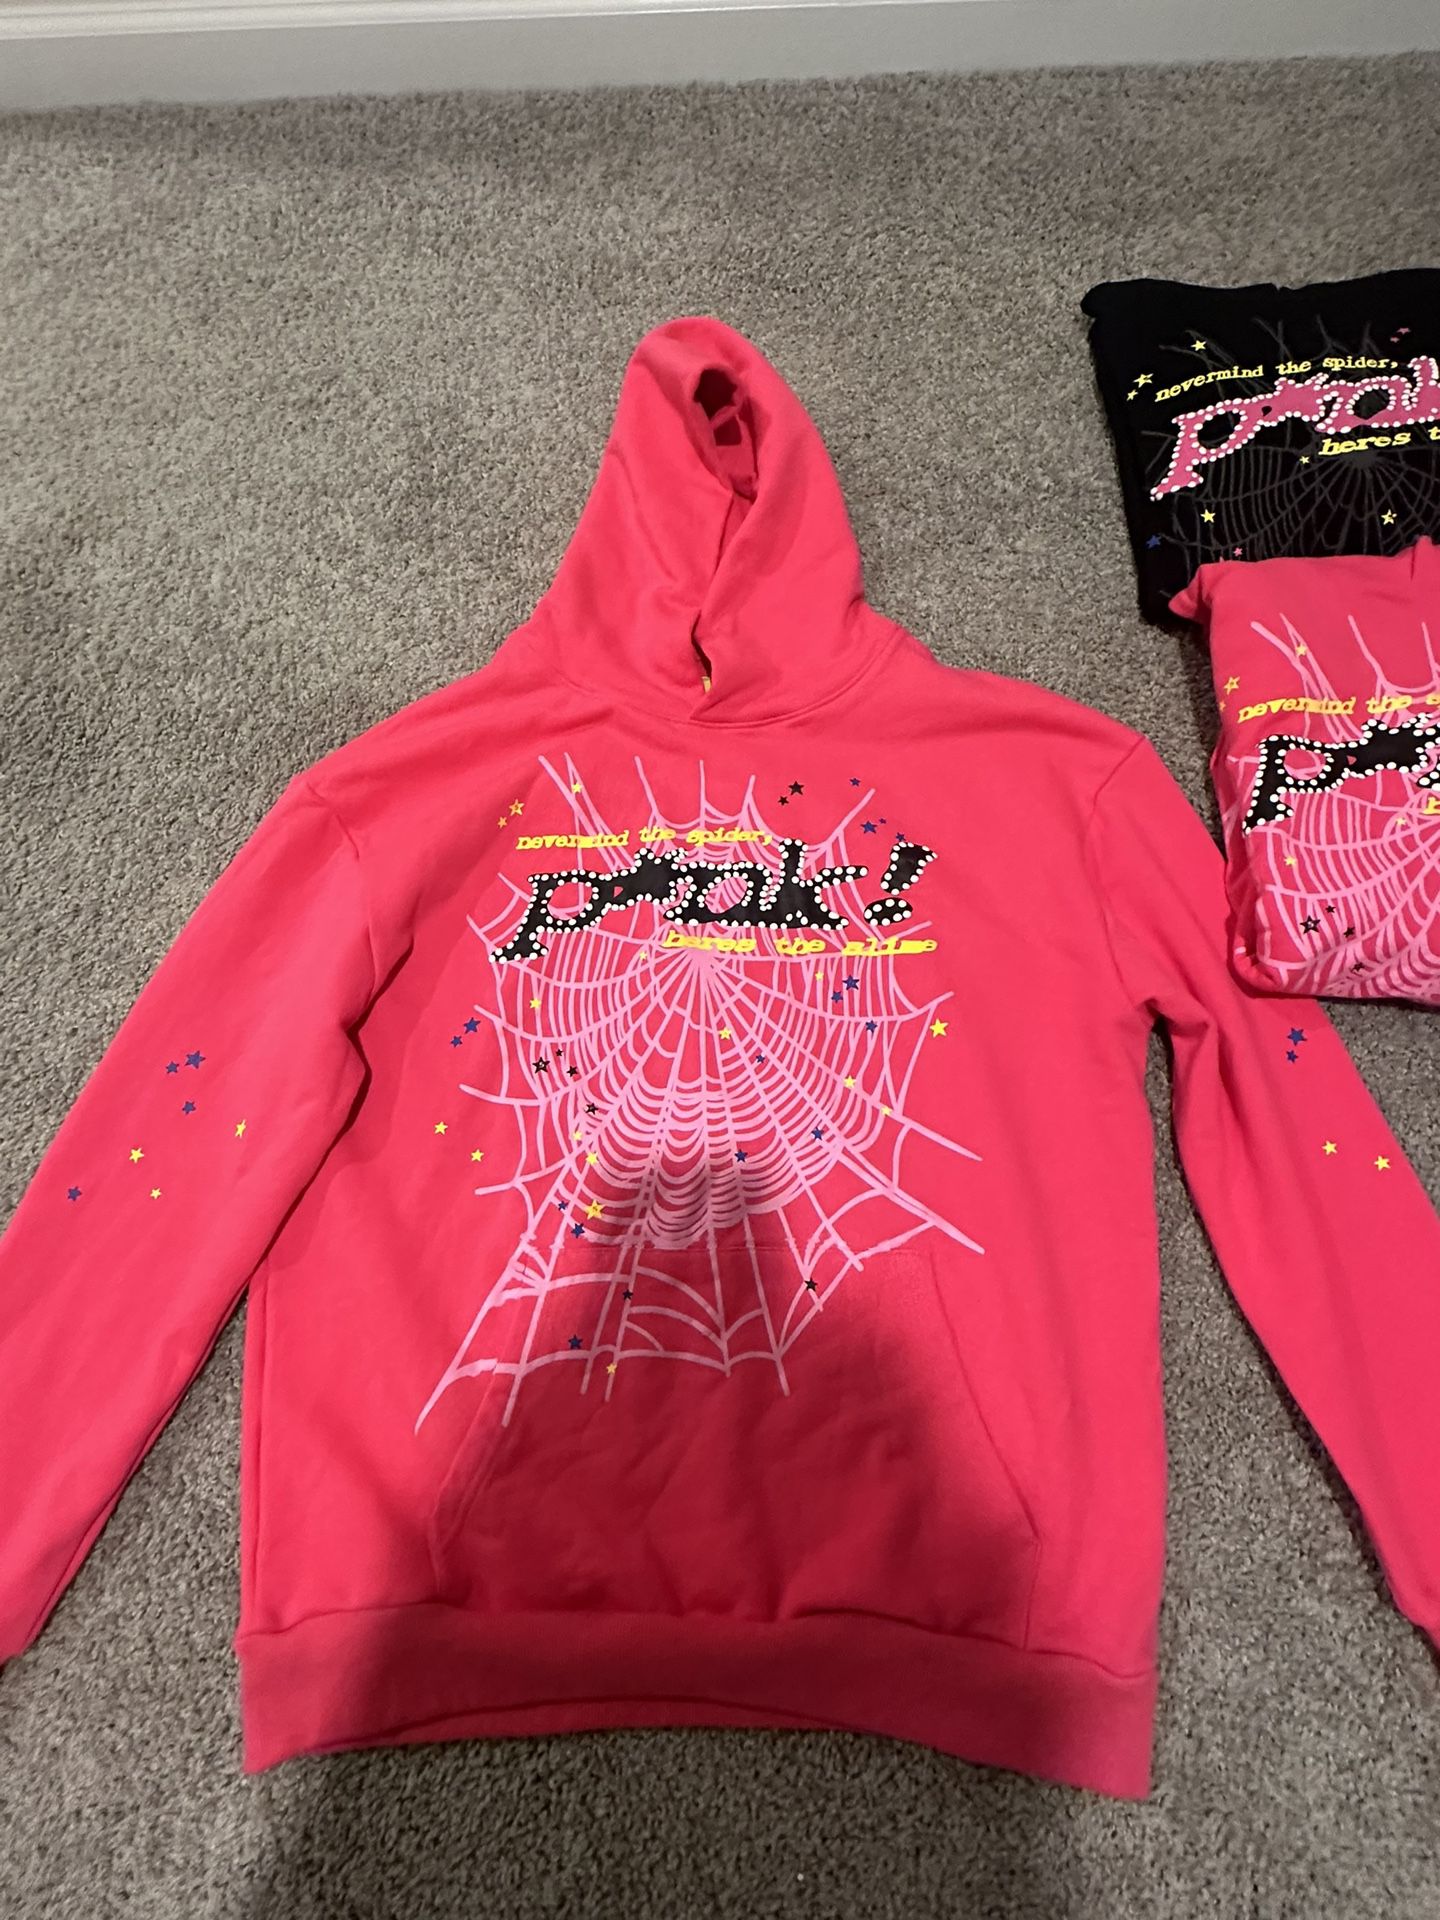 Pink P*nk Sp5der hoodie